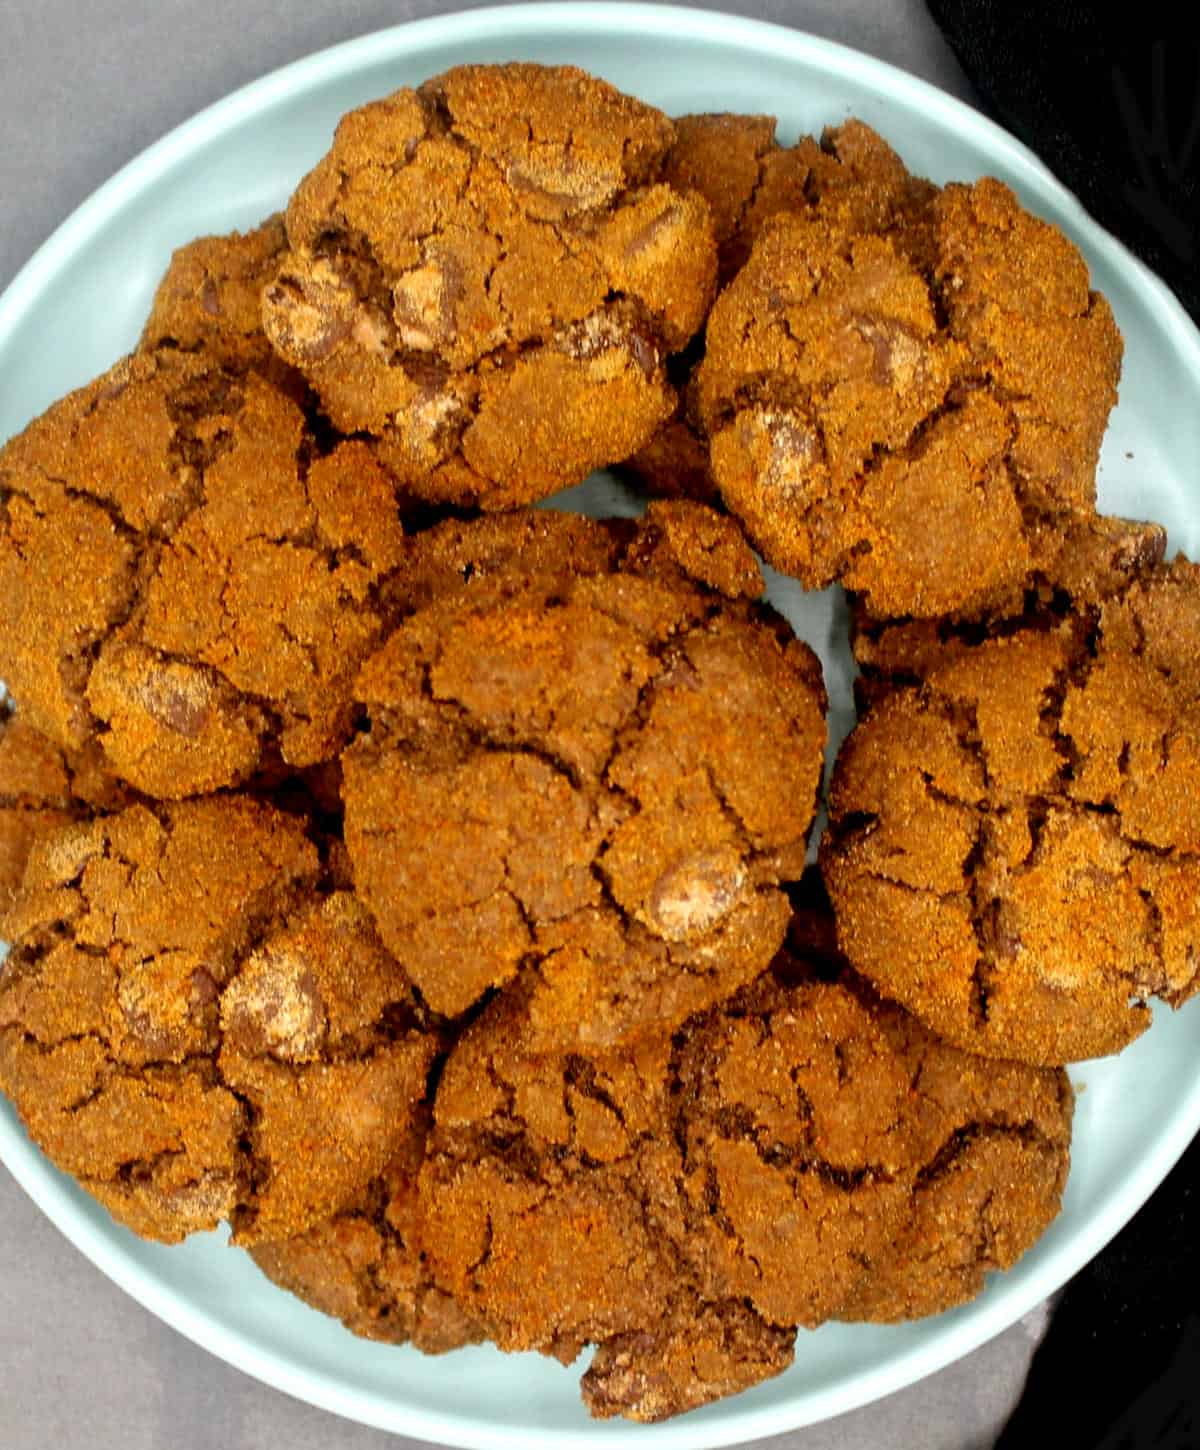 Vegan chocolate ginger cookies in blue plate.